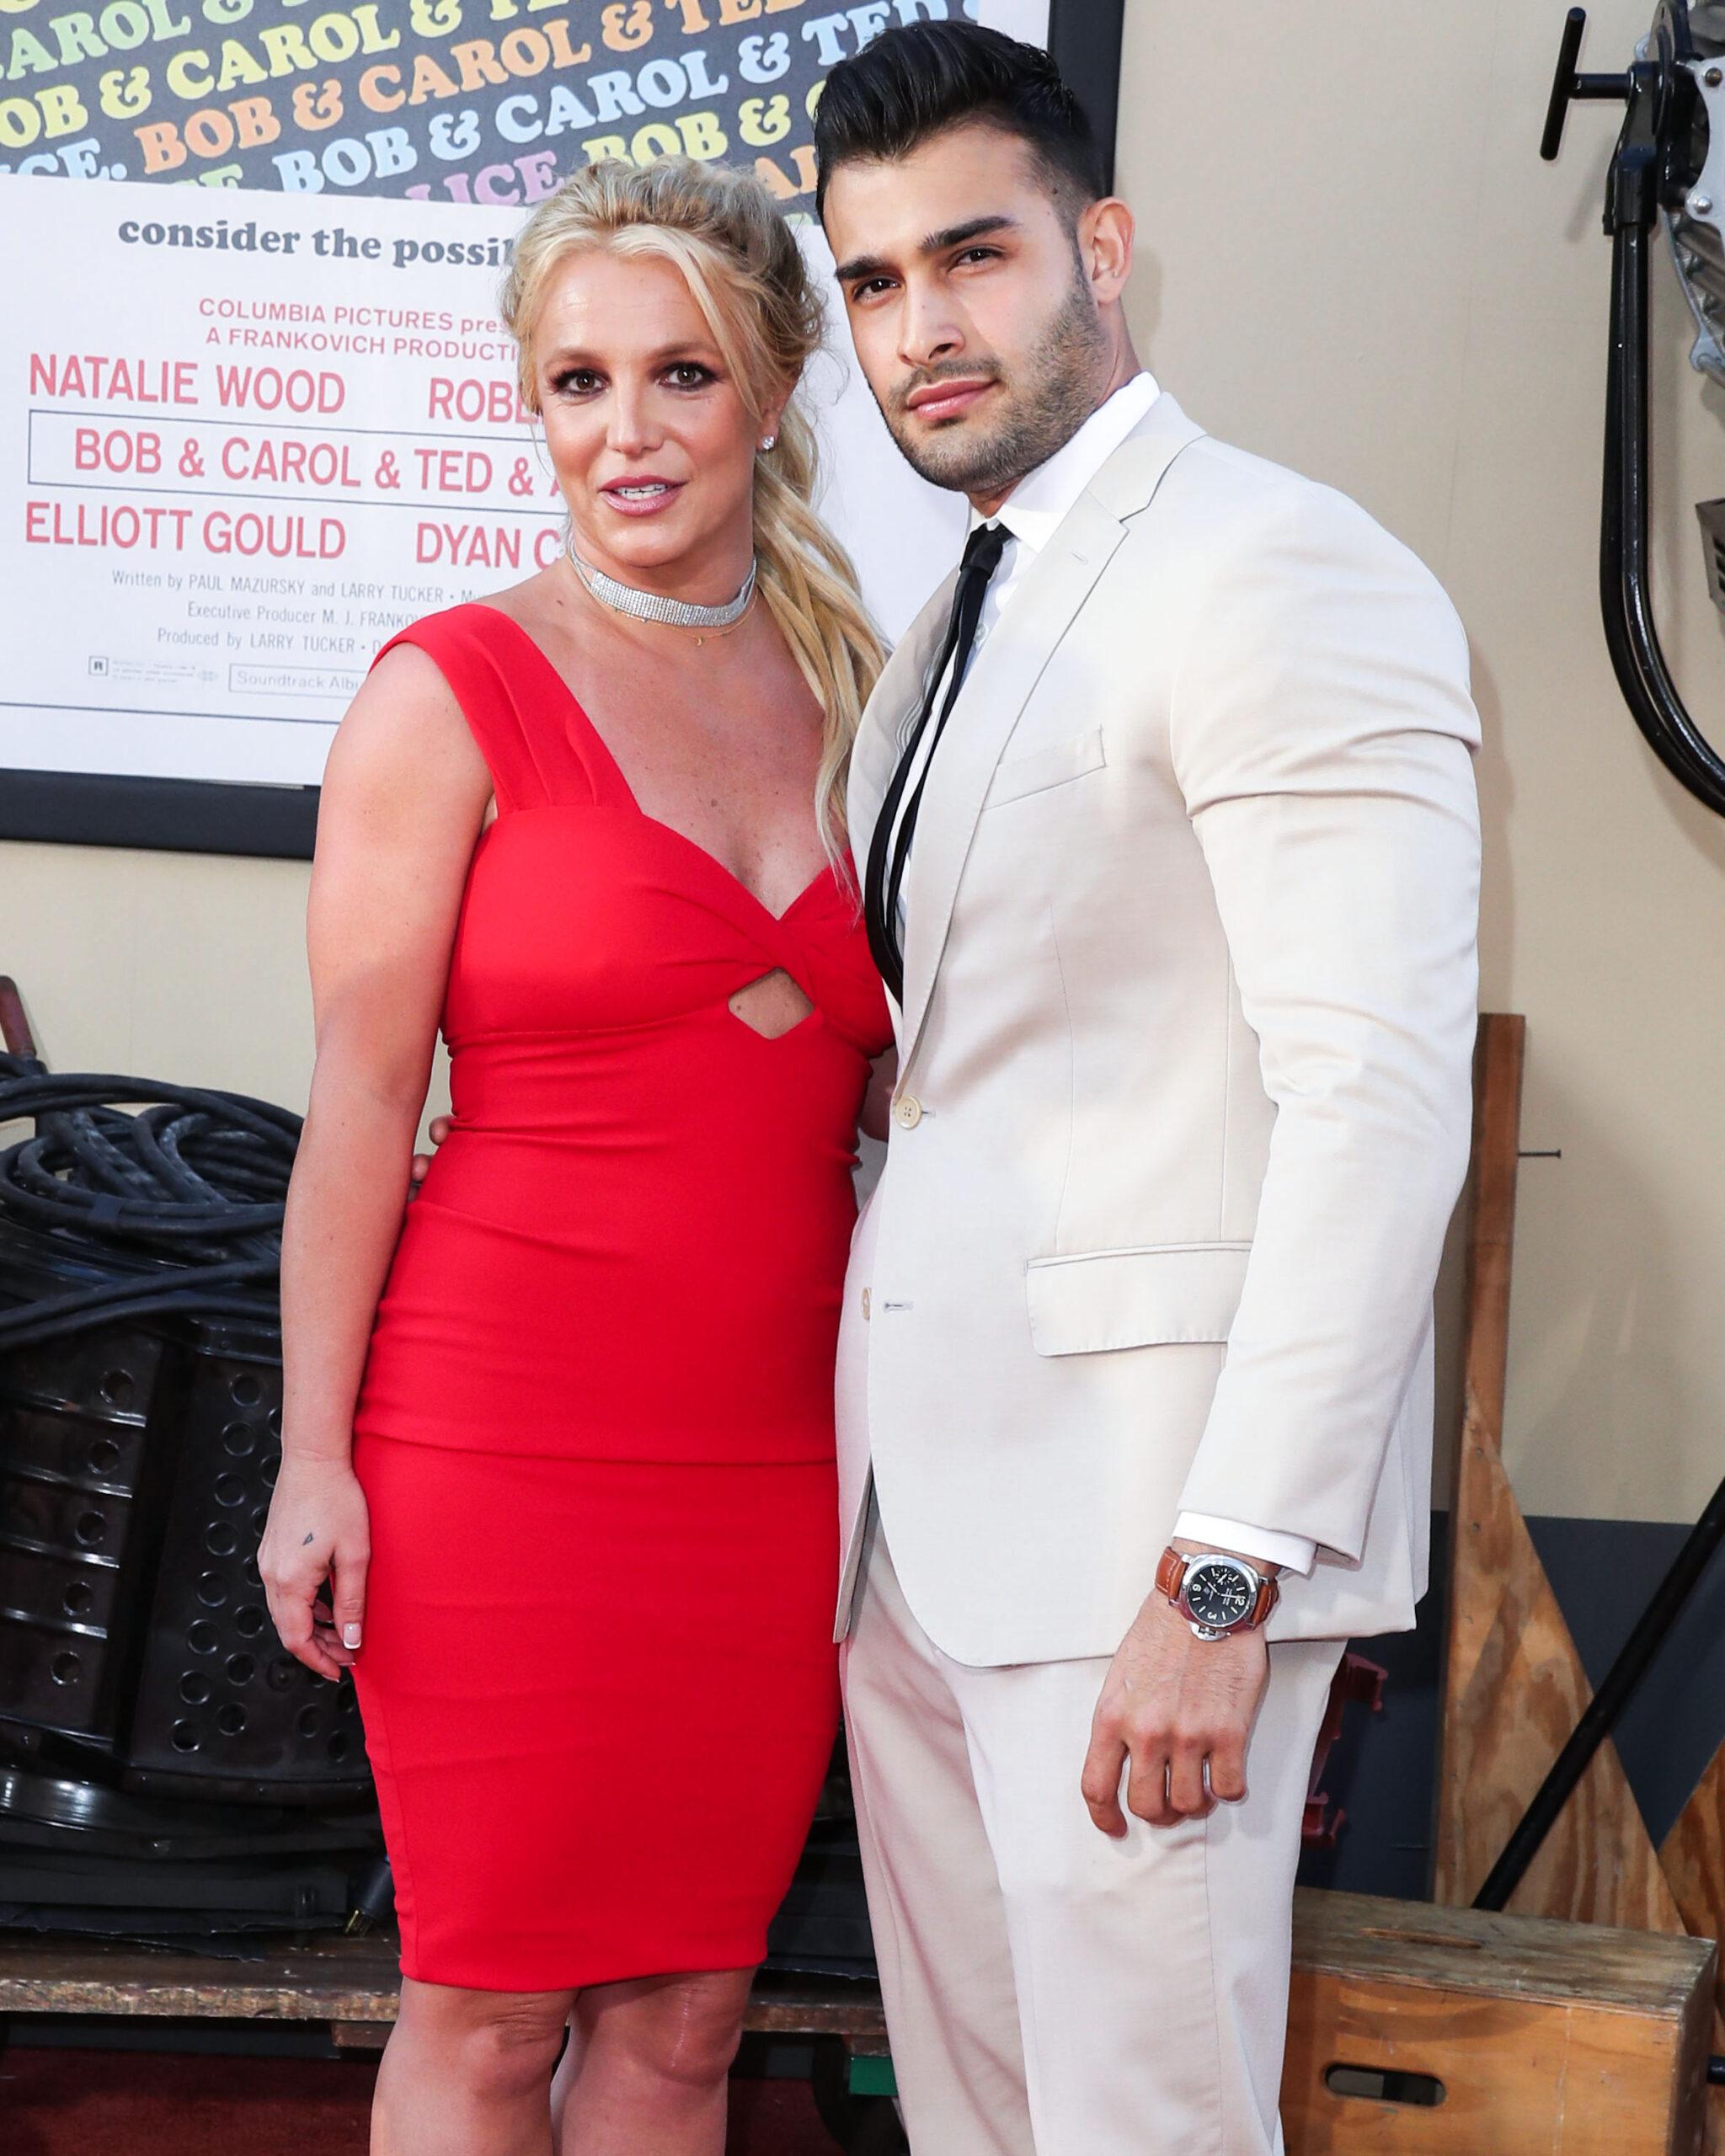 (ARQUIVO) Britney Spears está noiva de Sam Asghari depois de quase 5 anos juntos